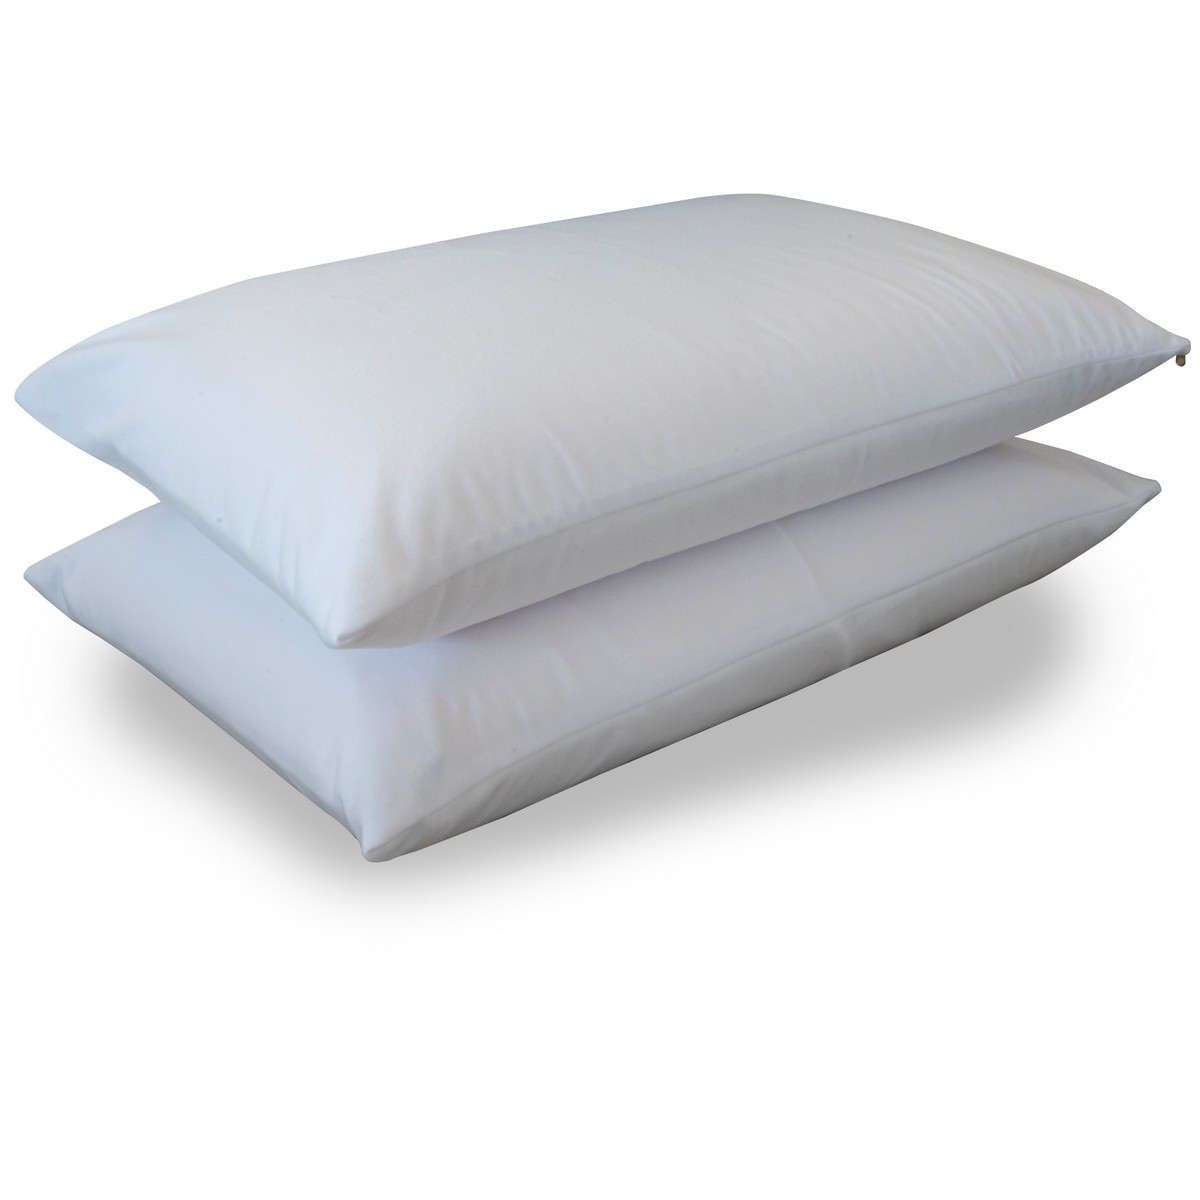 Αδιάβροχο προστατευτικό κάλυμμα μαξιλαριού Clean bed&home